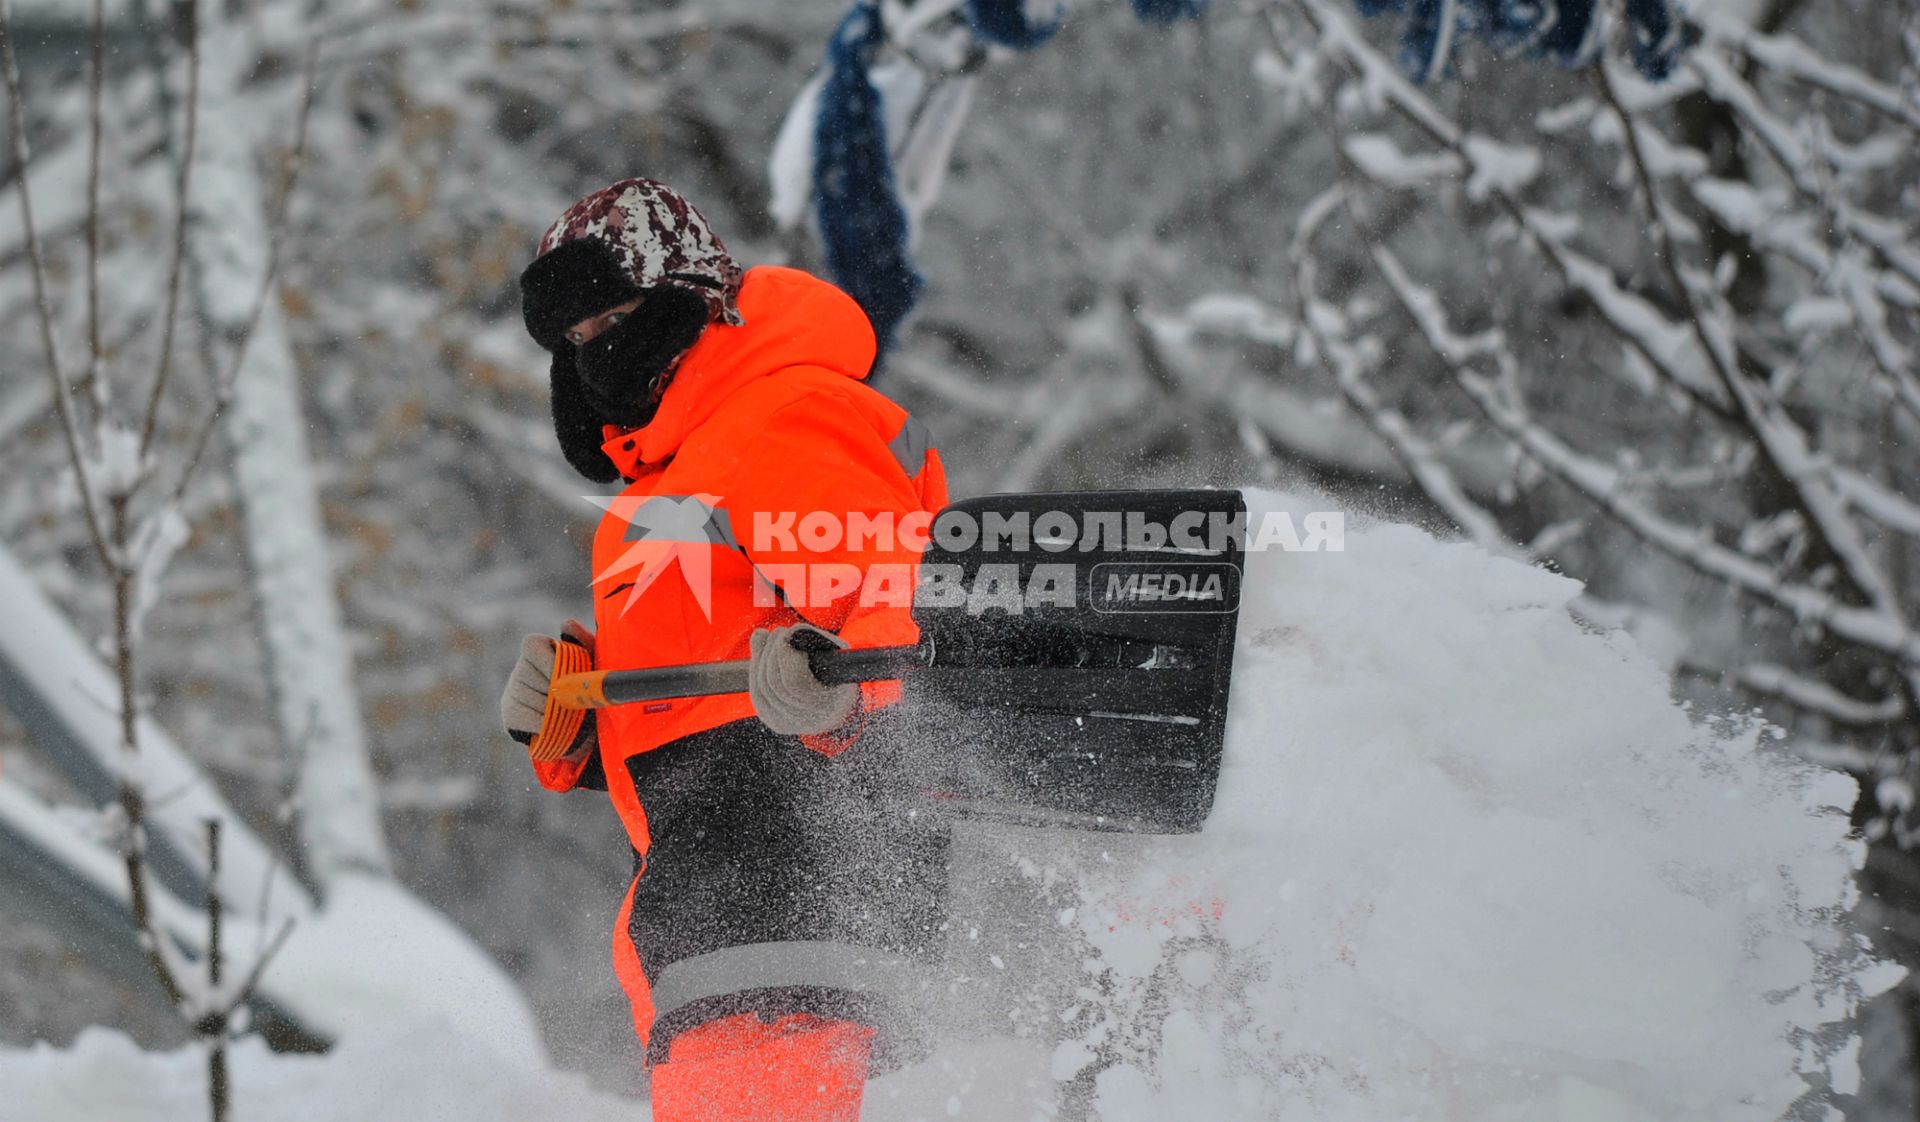 Московская область, Красногорск. Сотрудник коммунальной службы во время уборки снега.